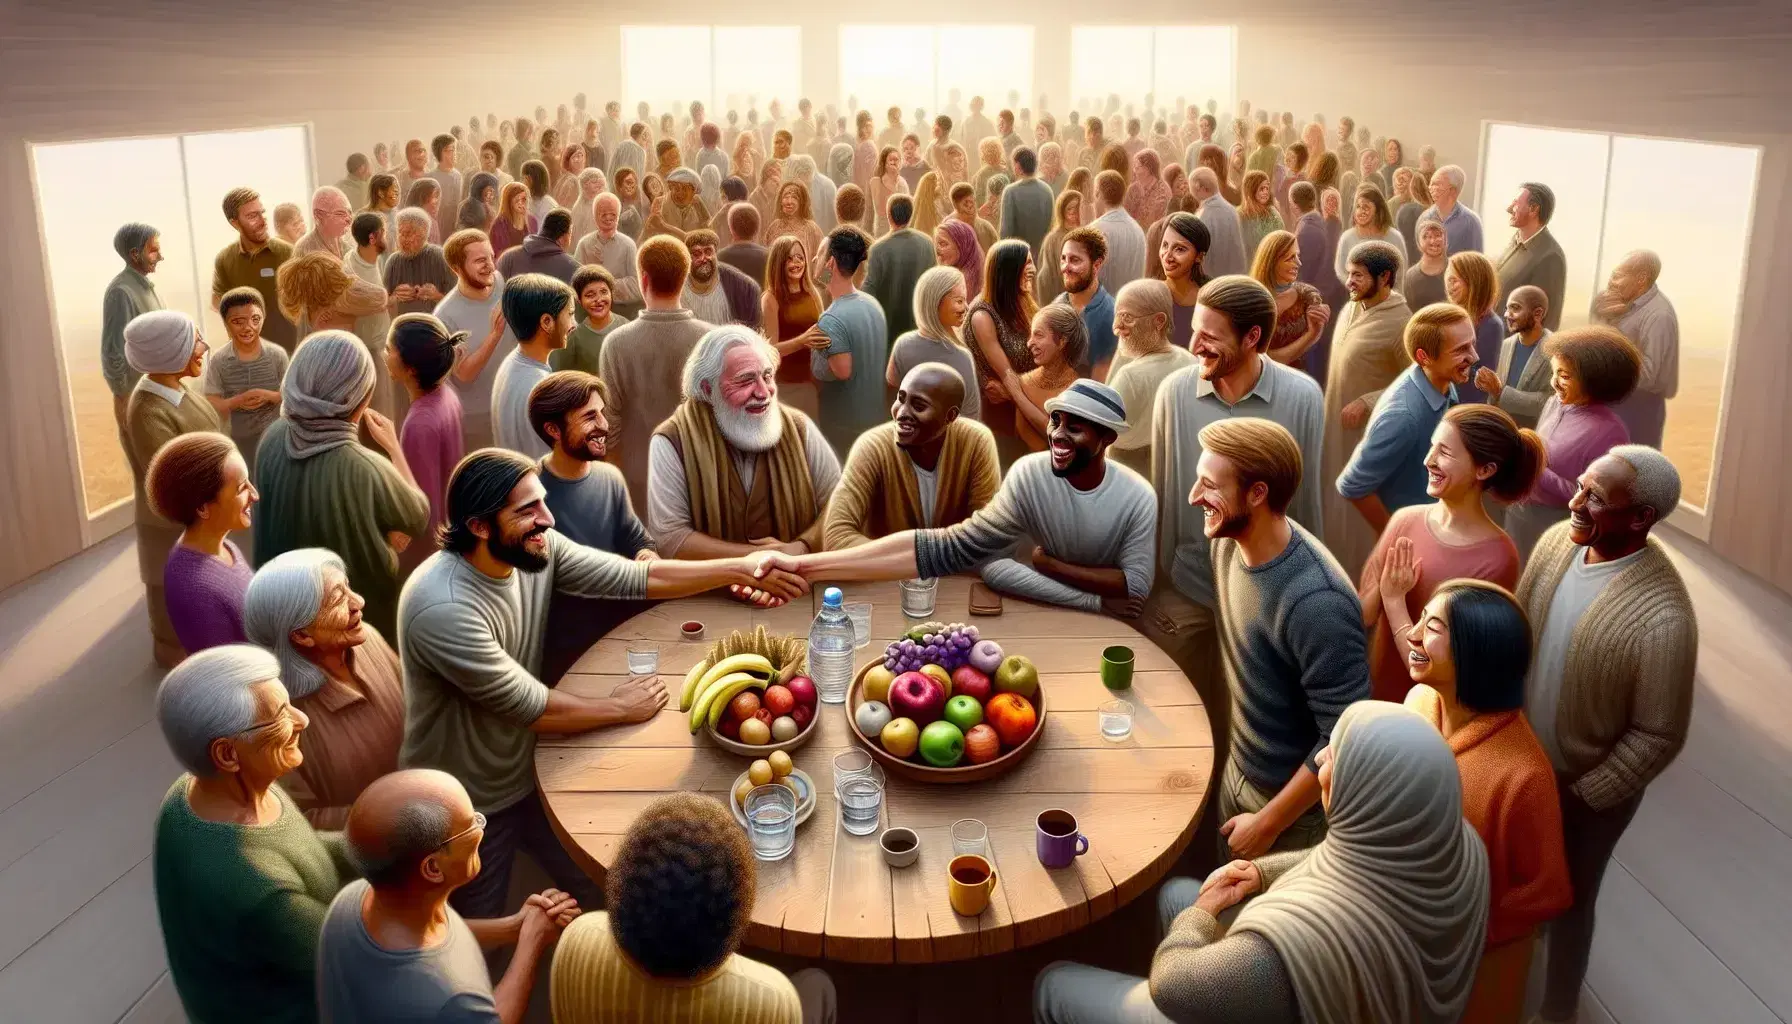 Grupo diverso de personas interactuando amigablemente en un espacio acogedor con mesa de frutas y bebidas.